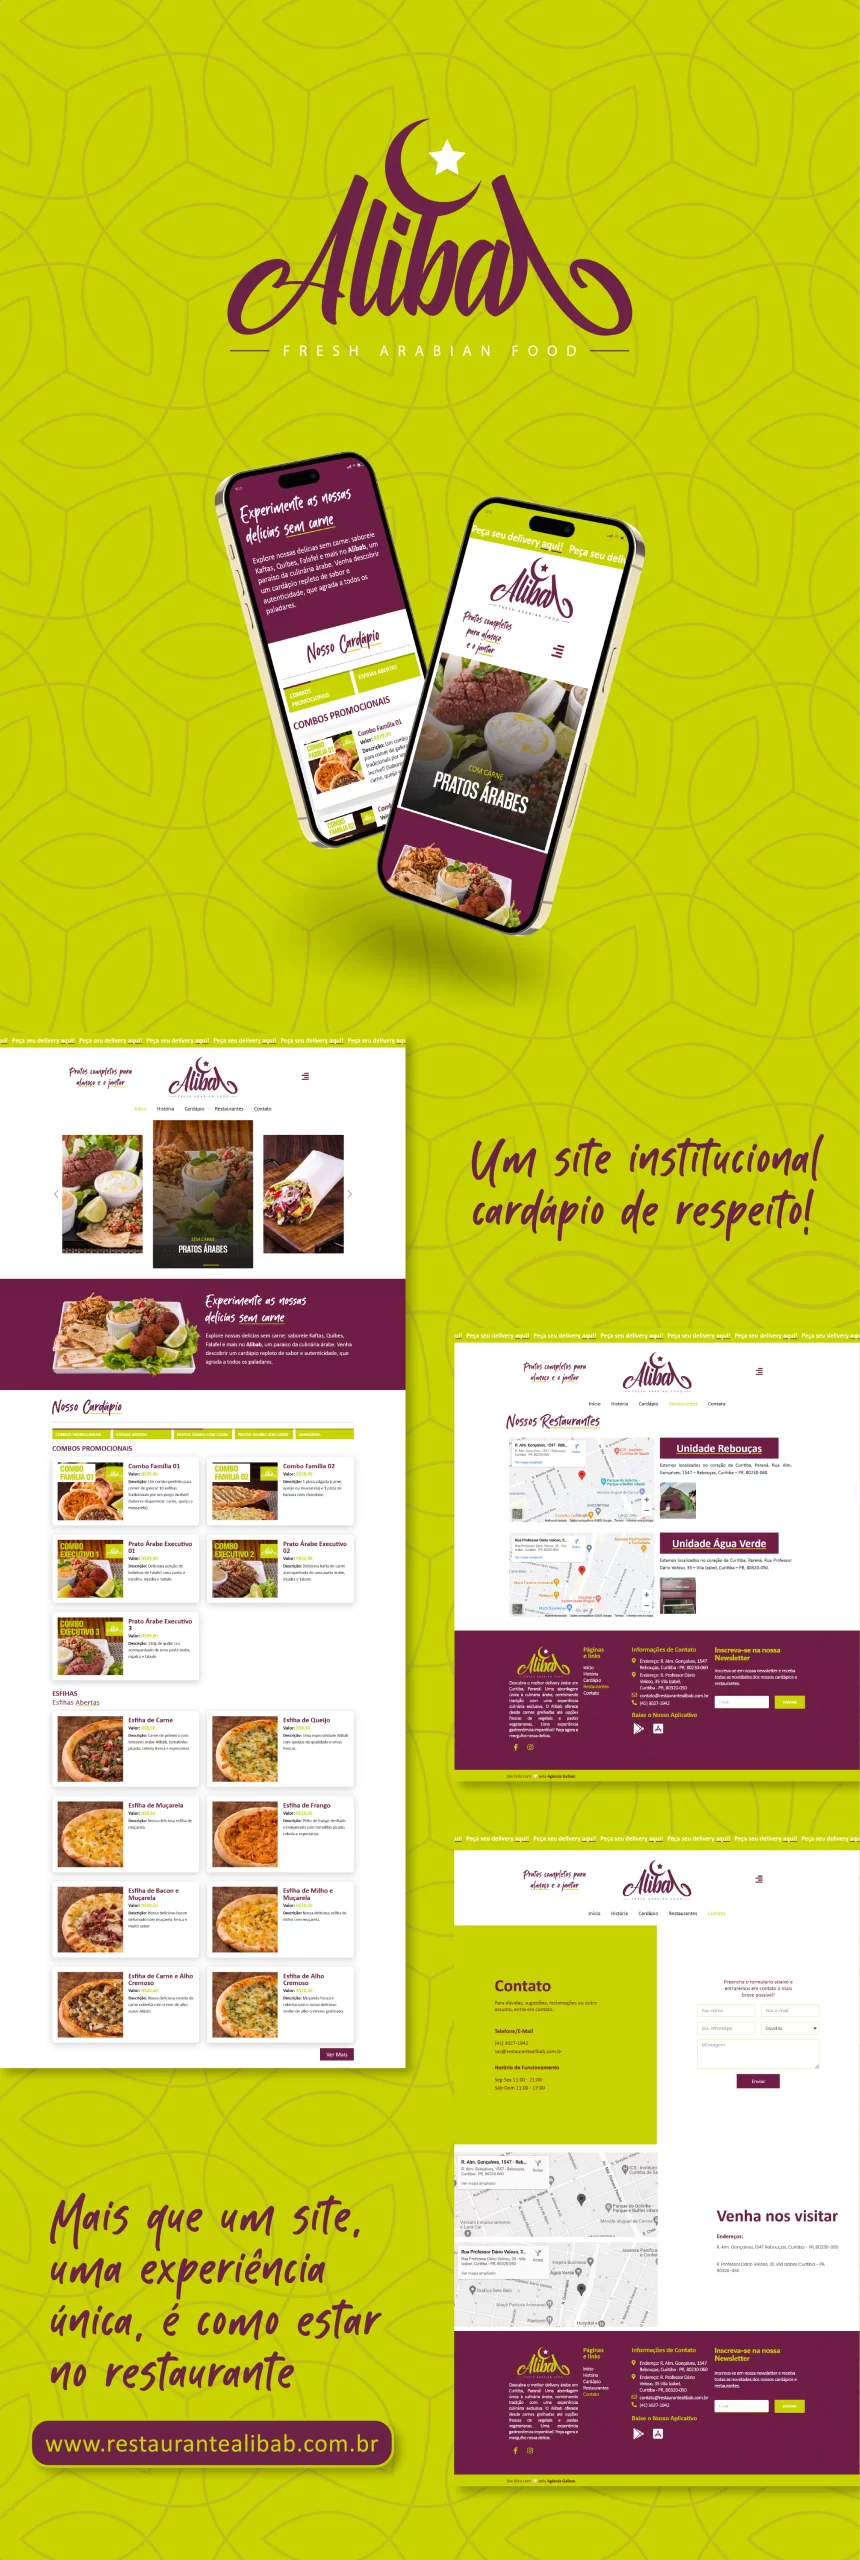 Imagem do cartão portfólio do projeto de site institucional do restaurante Alibab